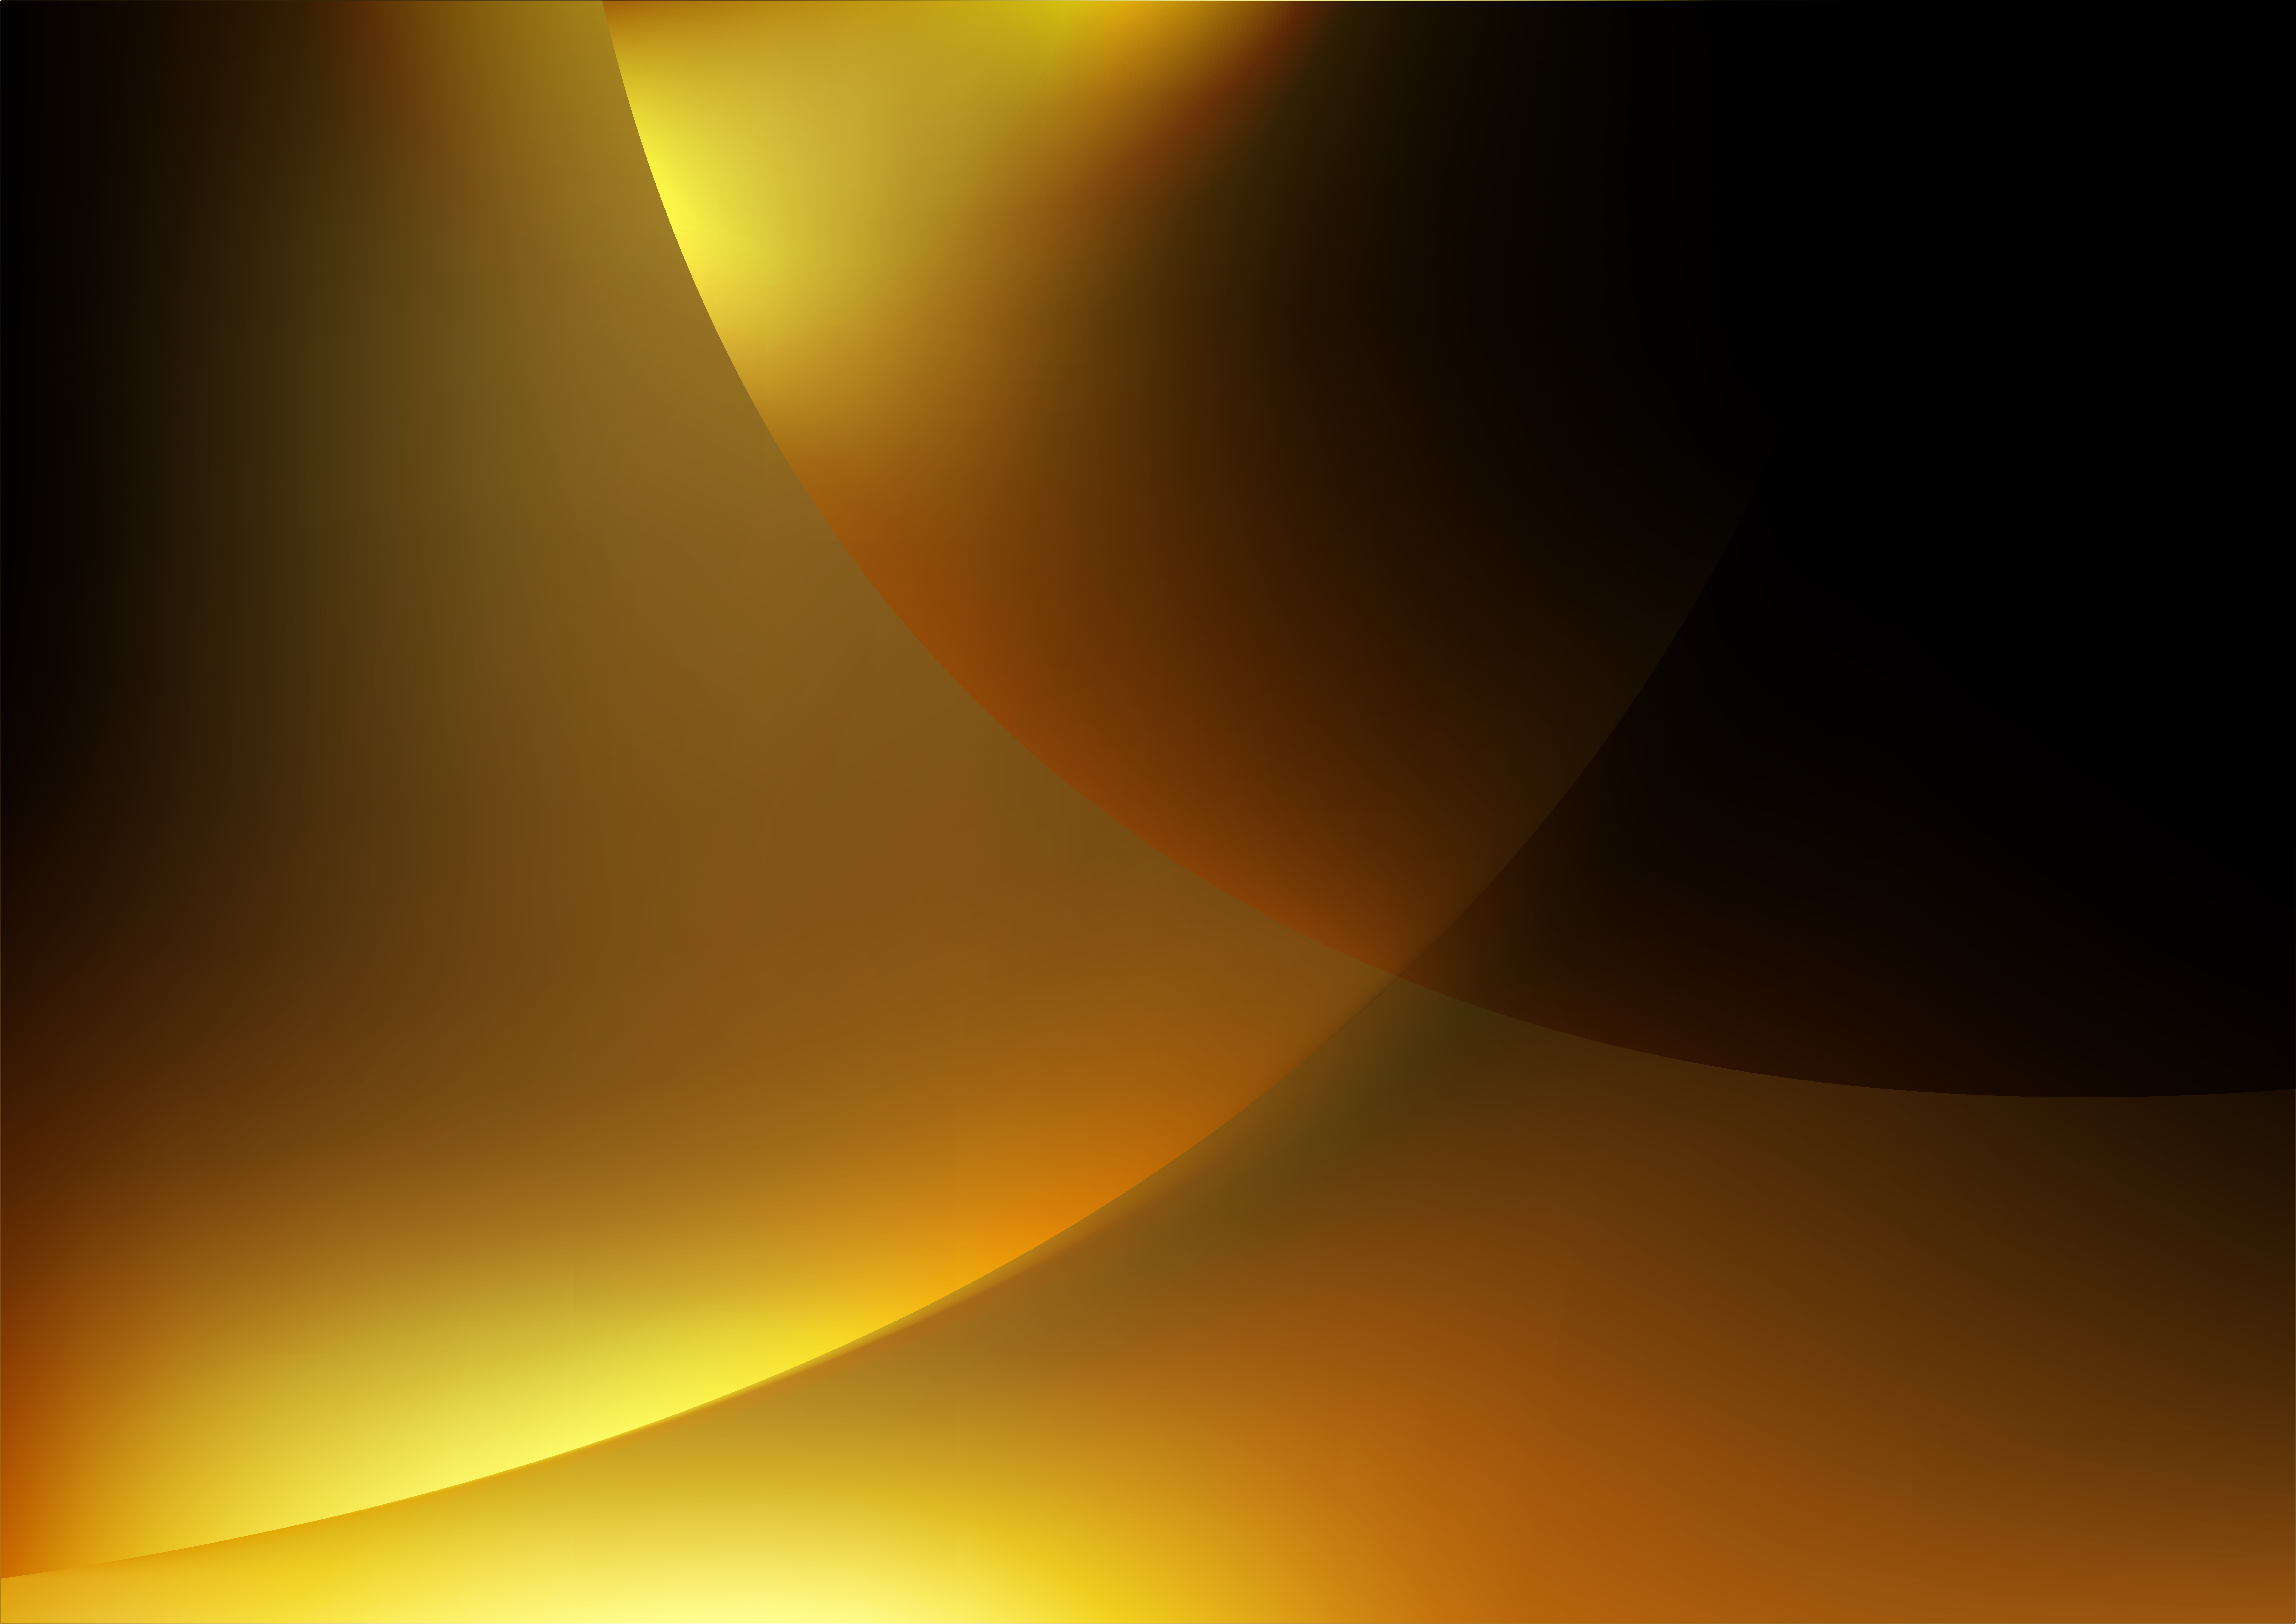 Gửi tới bạn miễn phí hình ảnh nền mờ độ trộn màu vàng cam và đen, trừu tượng hoàn toàn mới lạ. Với nền mờ tuyệt đẹp này, bạn sẽ trở thành người sỡ hữu những bức hình thiên nhiên đẹp nhất trên trang trí máy tính của mình.